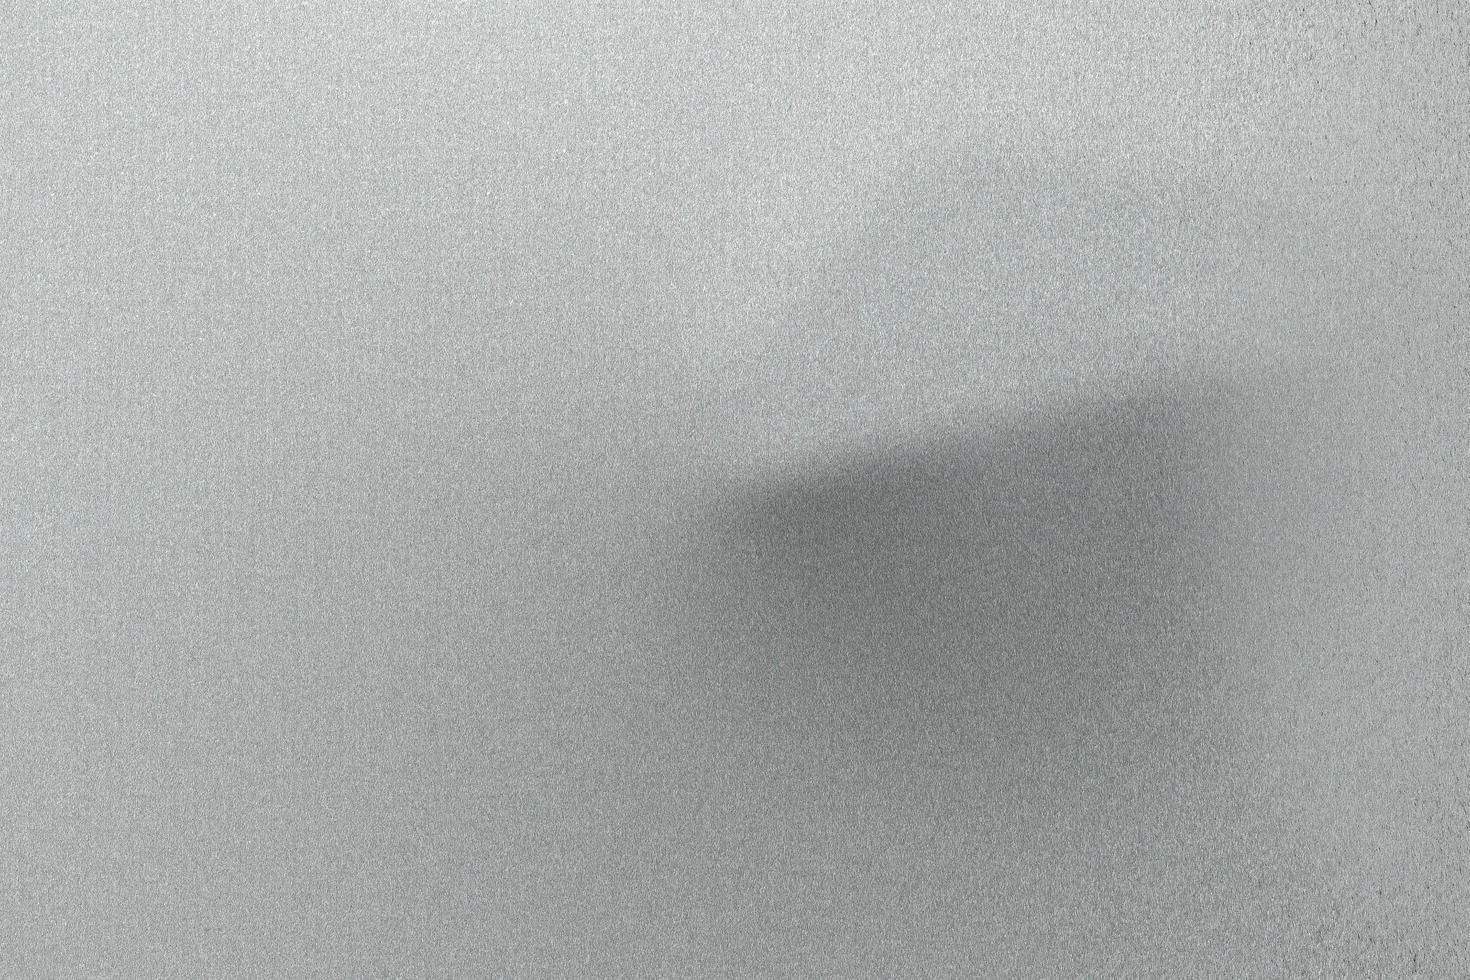 tôle métallique vague gris clair brossé, fond de texture abstraite photo